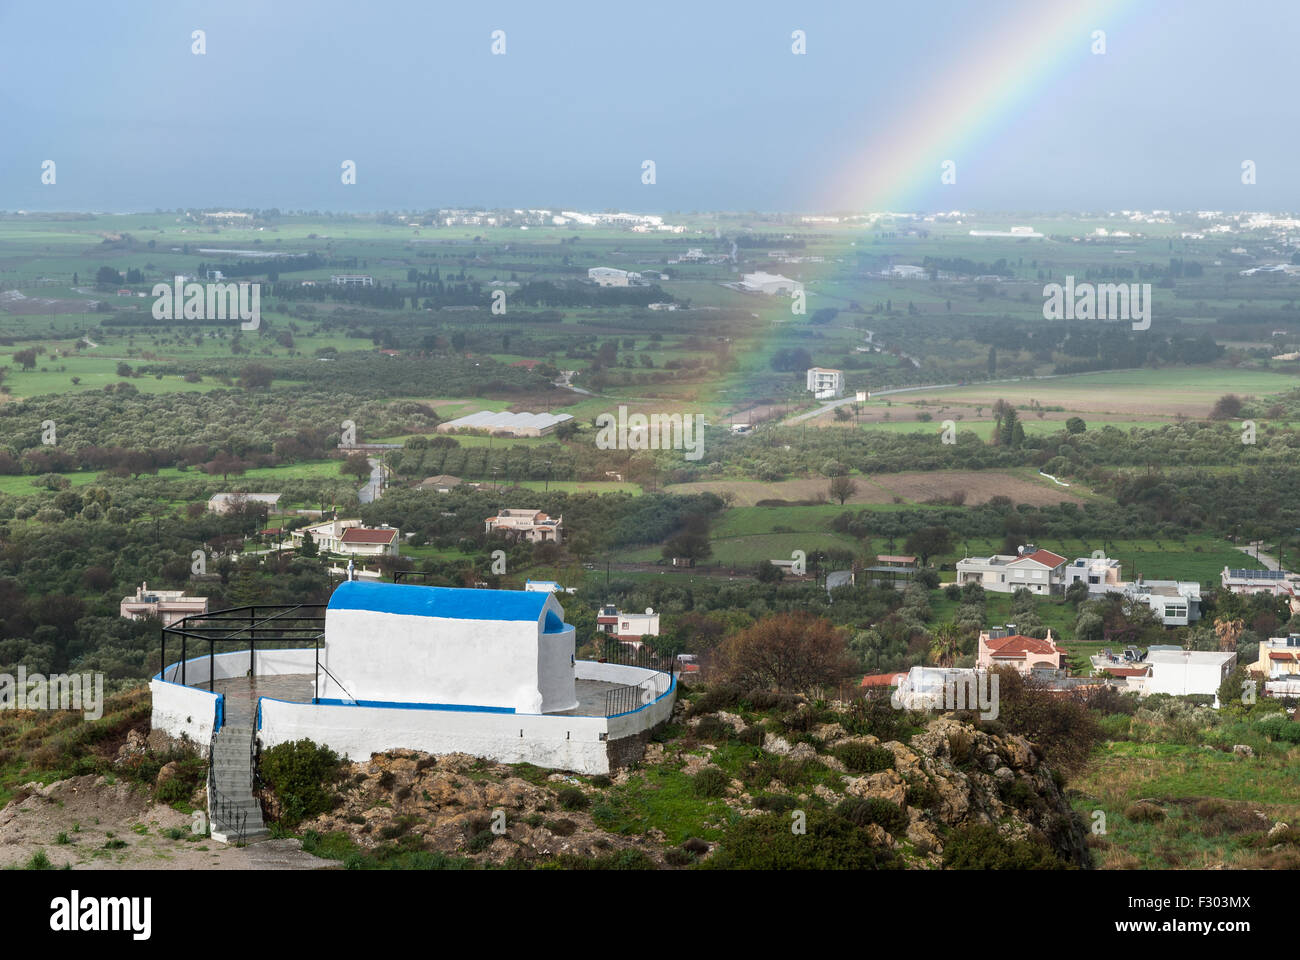 Regenbogen über traditionelle Kirche nach Regen in Insel Kos, Griechenland Stockfoto